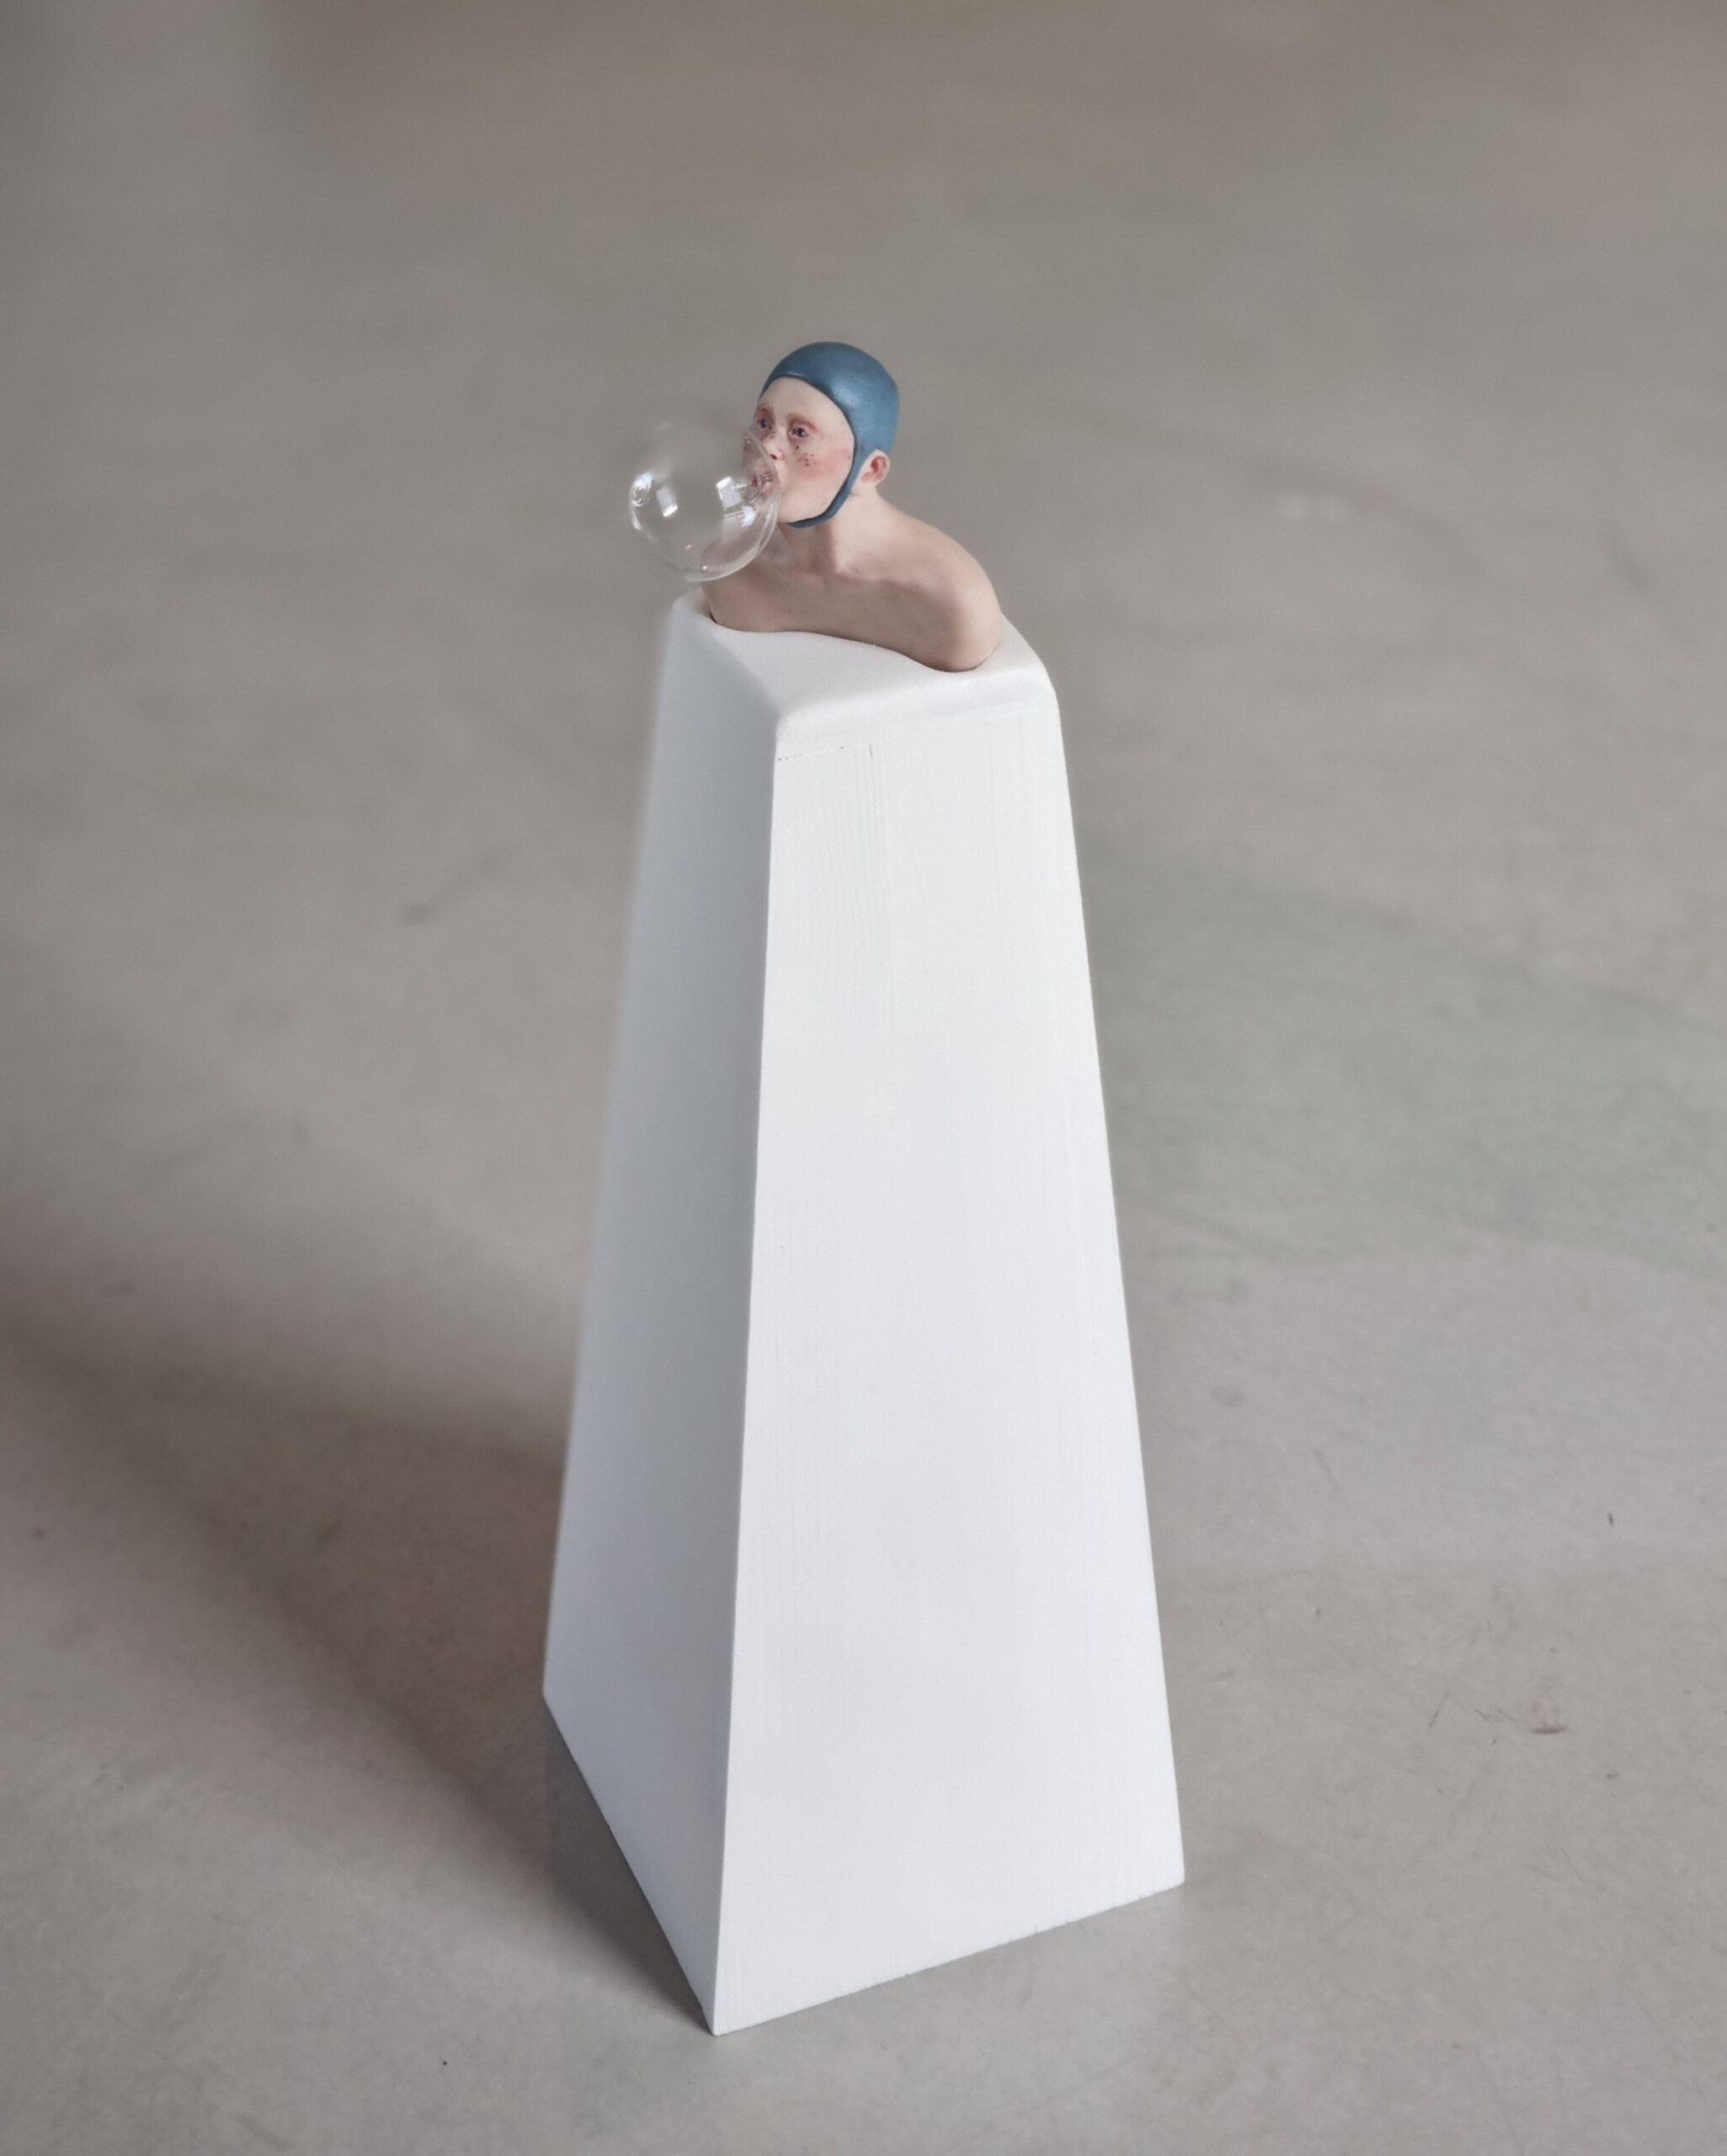 Kunst: bellenblazer blauw van kunstenaar Saskia Hoeboer